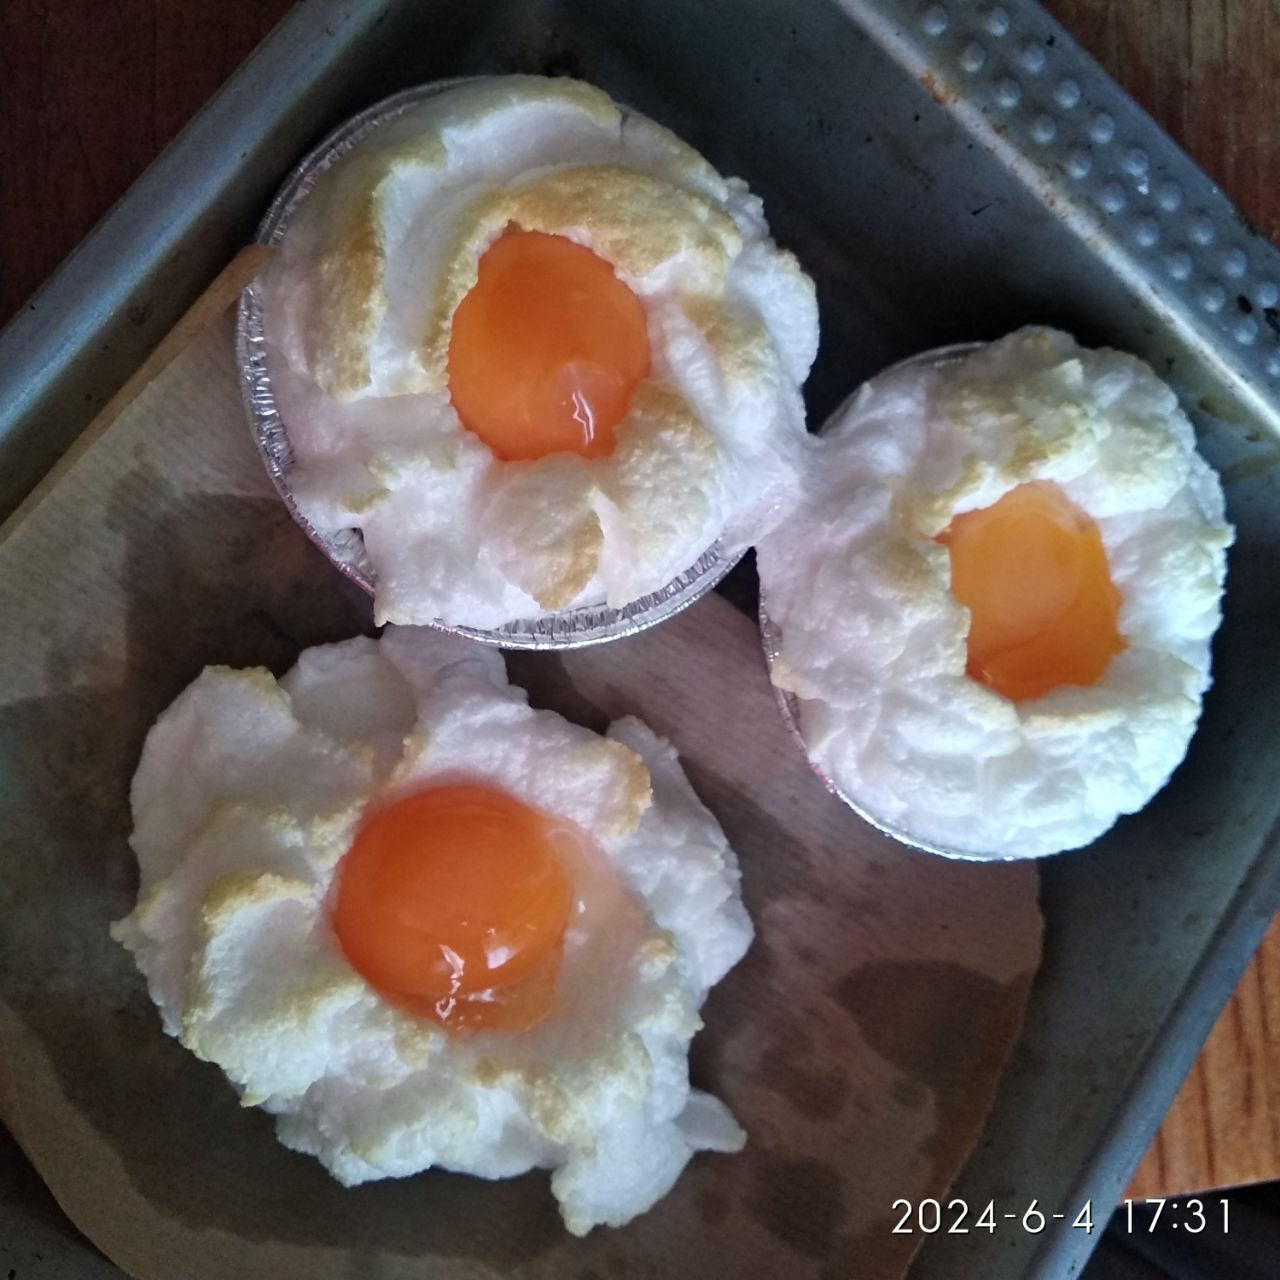 Orsini eggs and my new profession - recipe tester - My, Cooking, Breakfast, Eggs, Recipe, Orsini eggs, Longpost